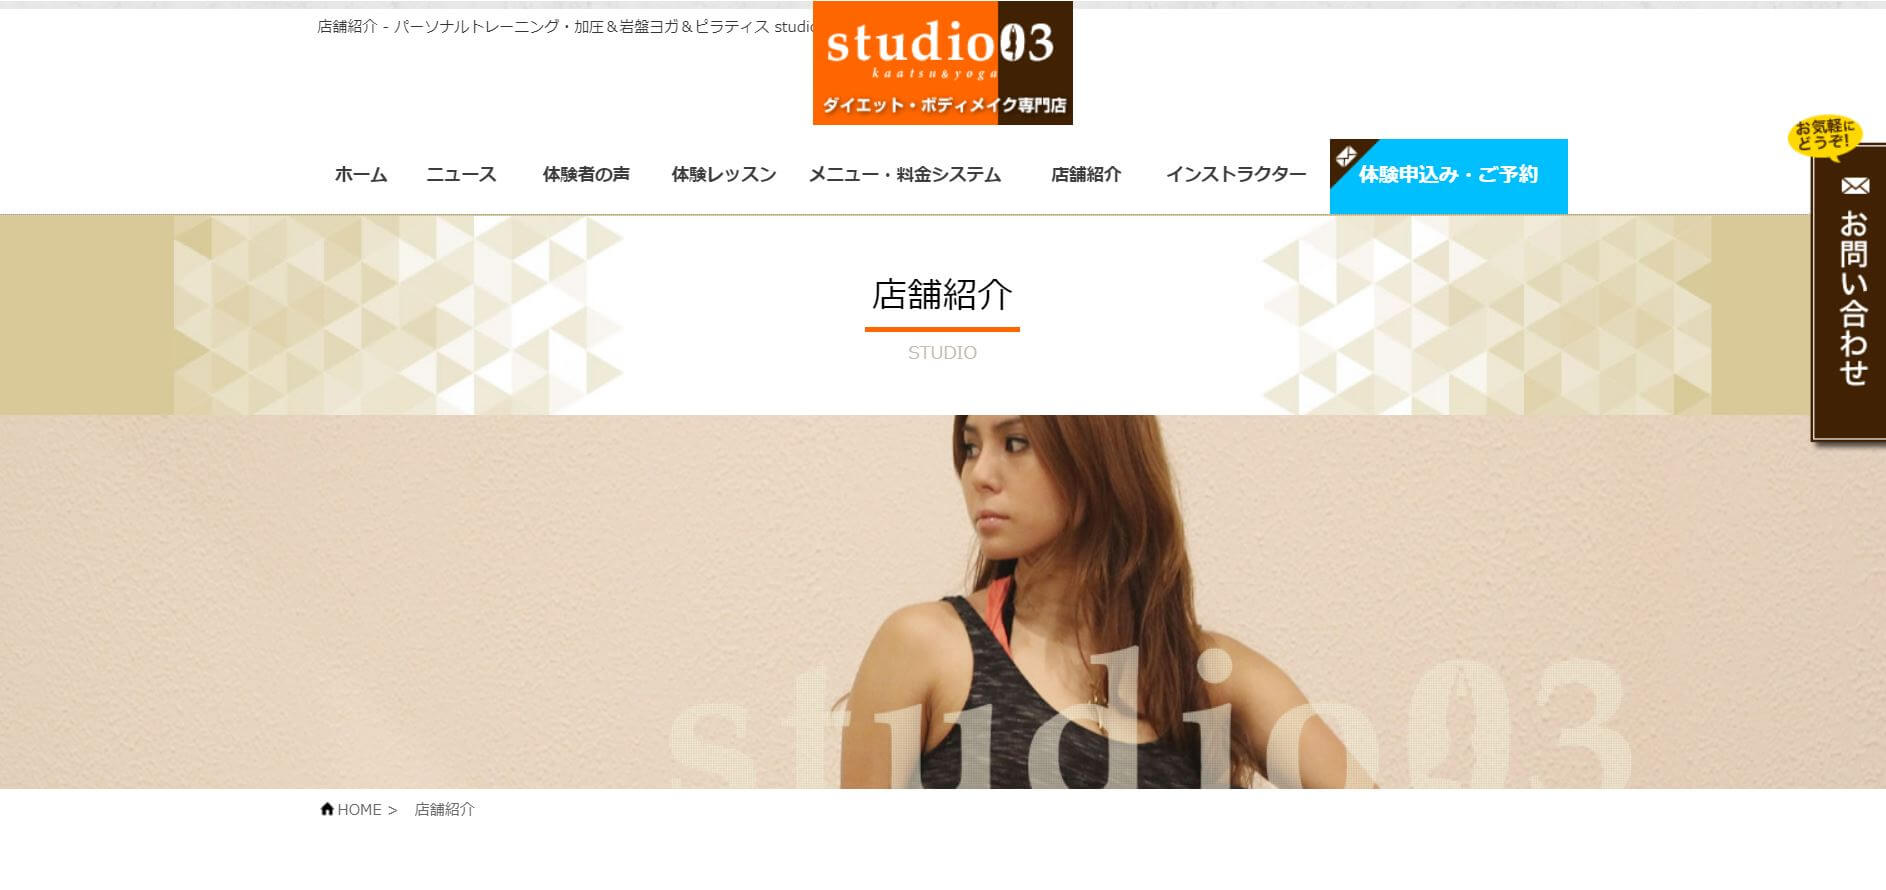 studio 03